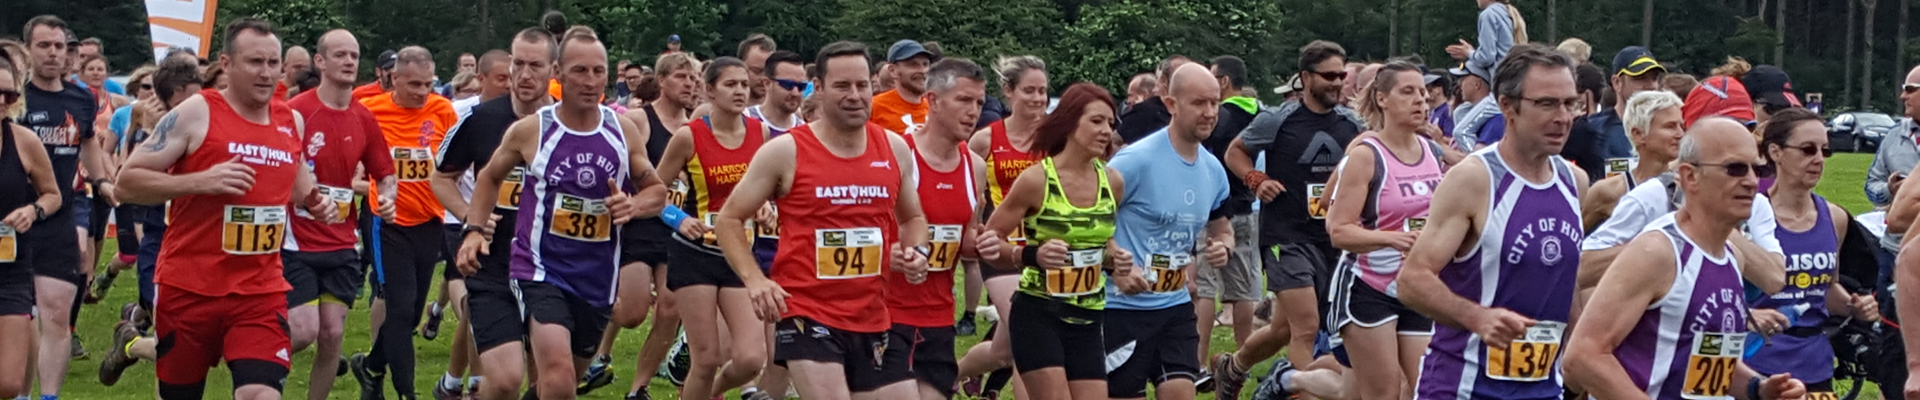 Dalby Conquer the Forest Half Marathon & 10k 2020